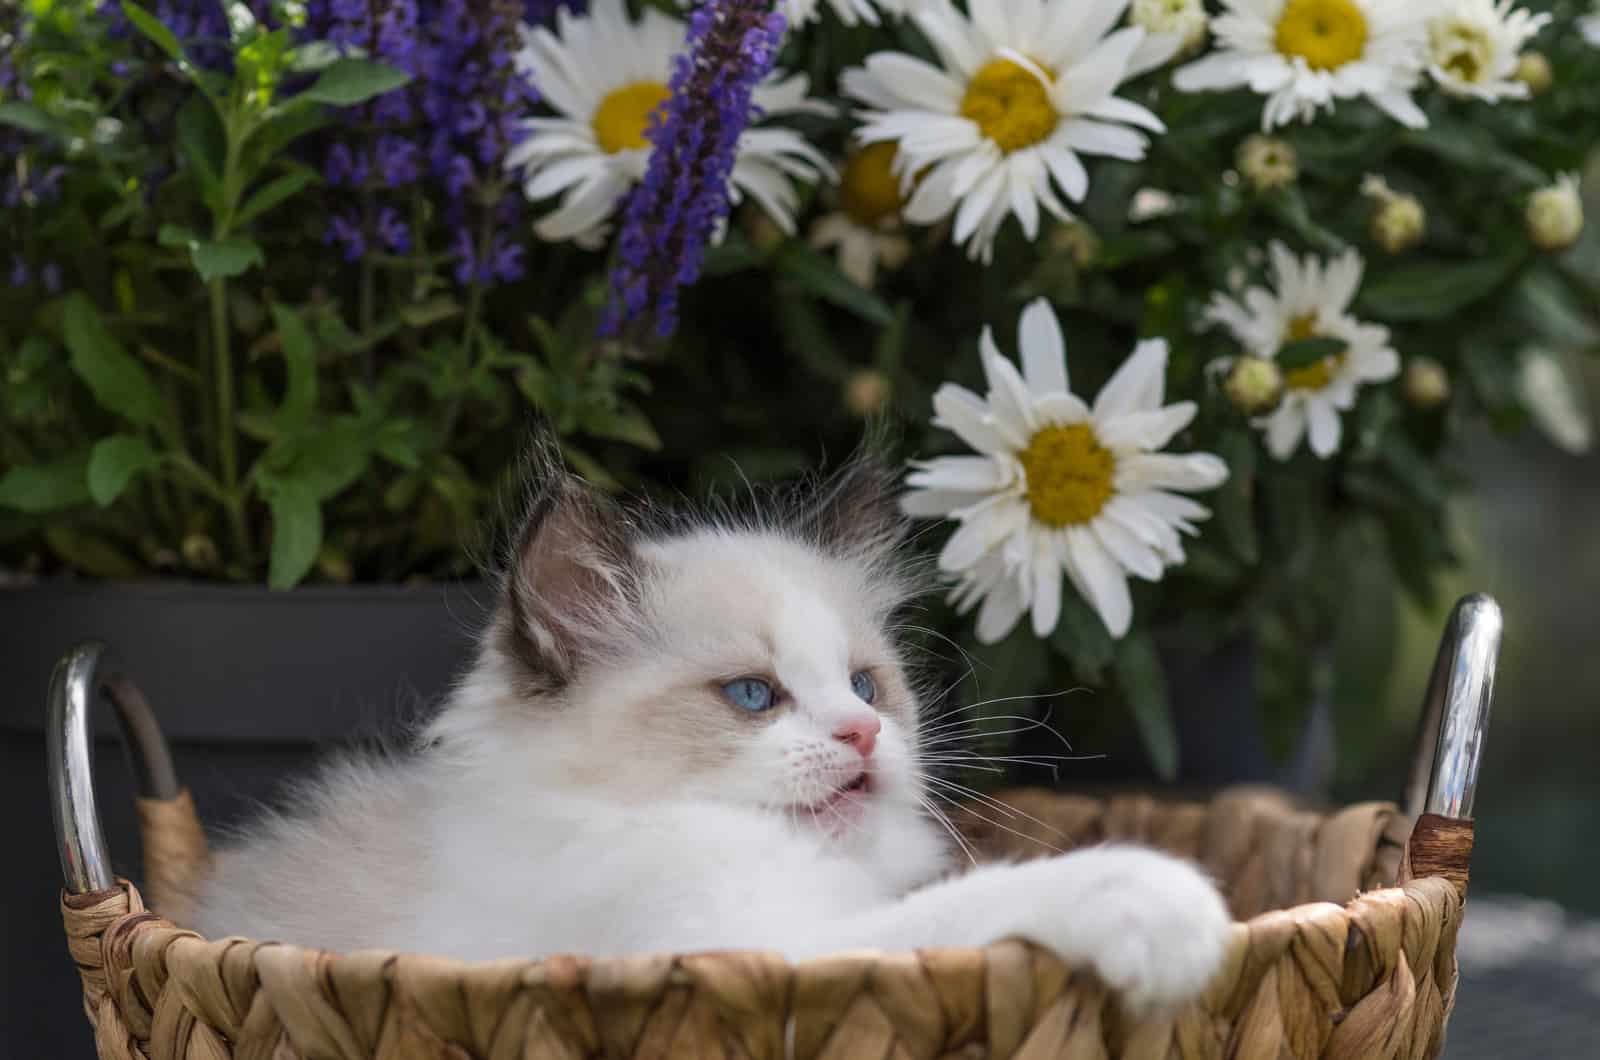 Ragdoll Kitten peeking out of the basket